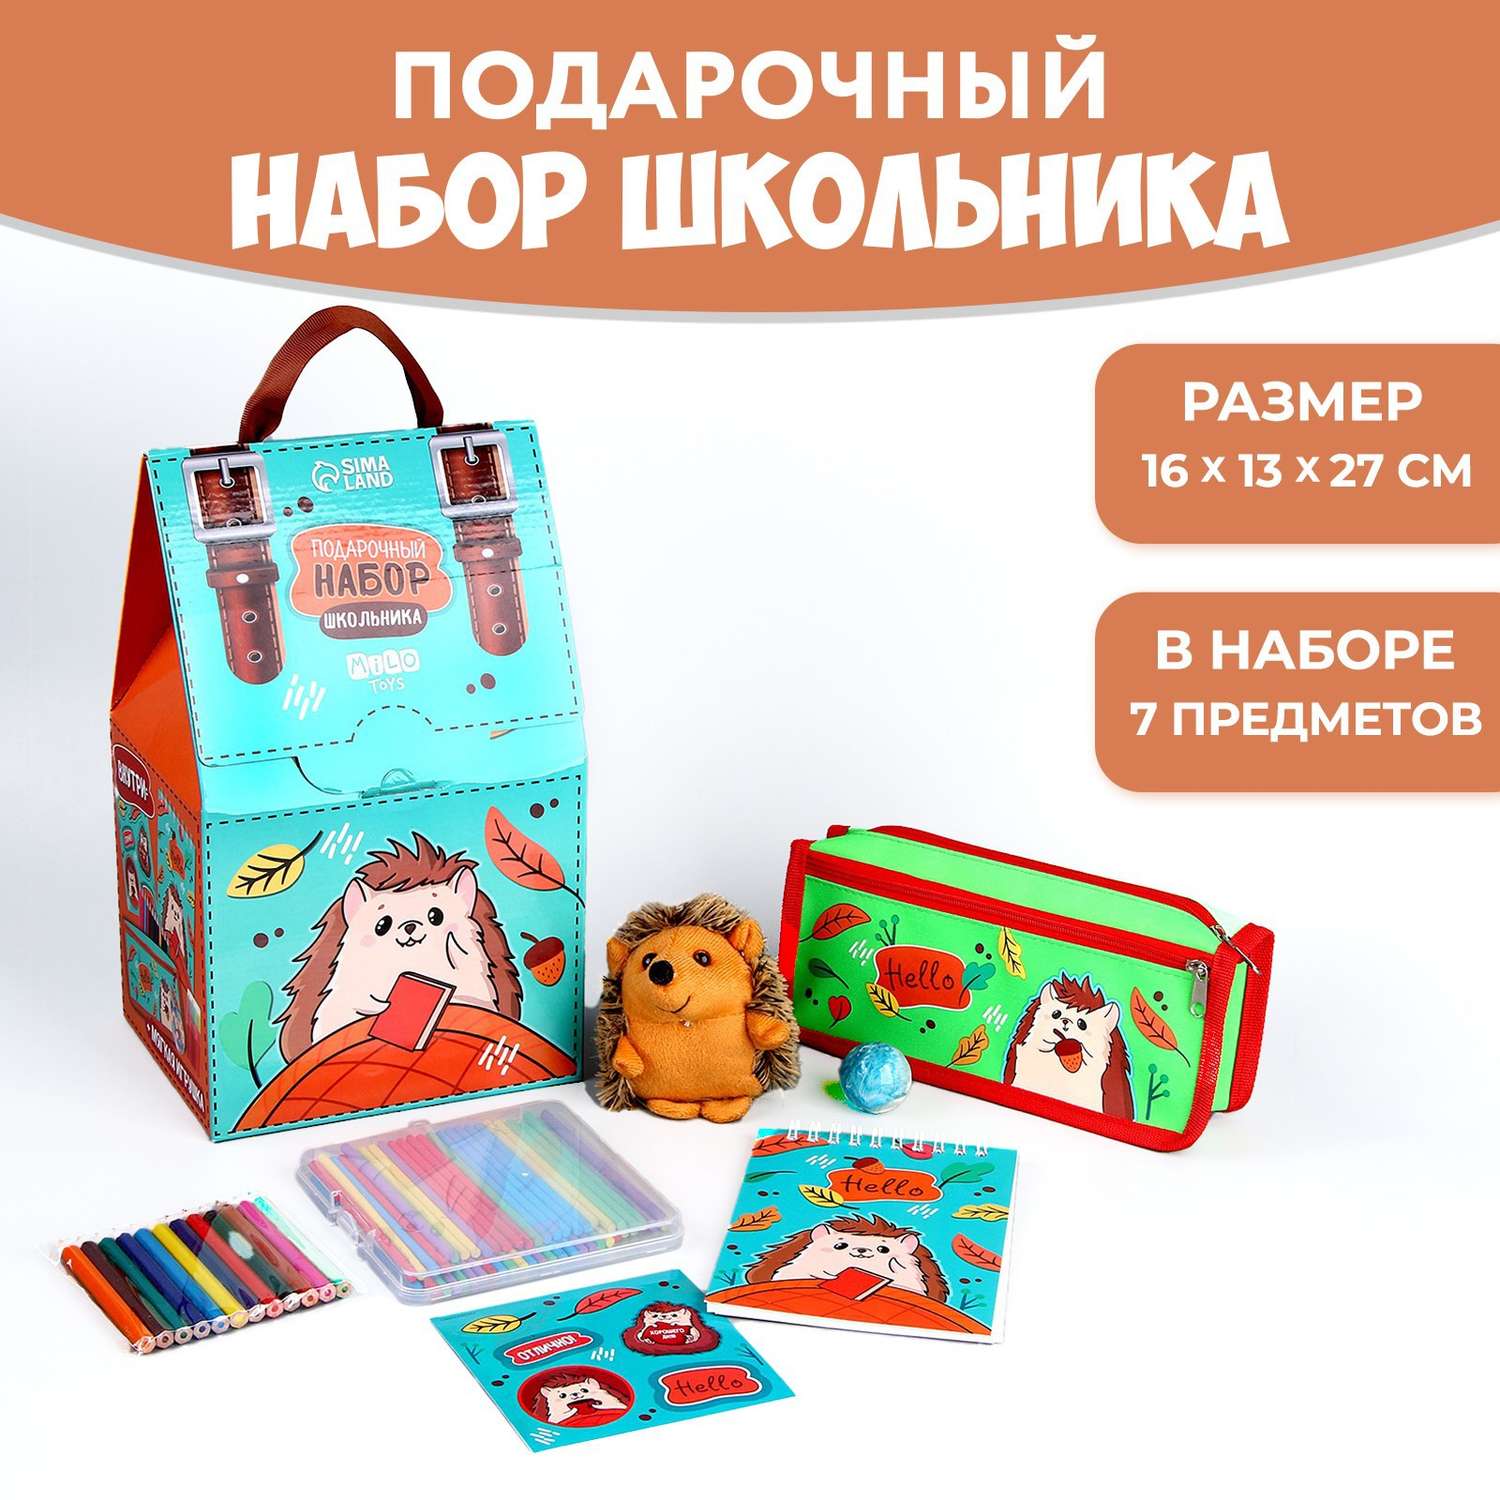 Подарочный набор школьника Milo Toys с мягкой игрушкой «Ёжик» 7 предметов - фото 1